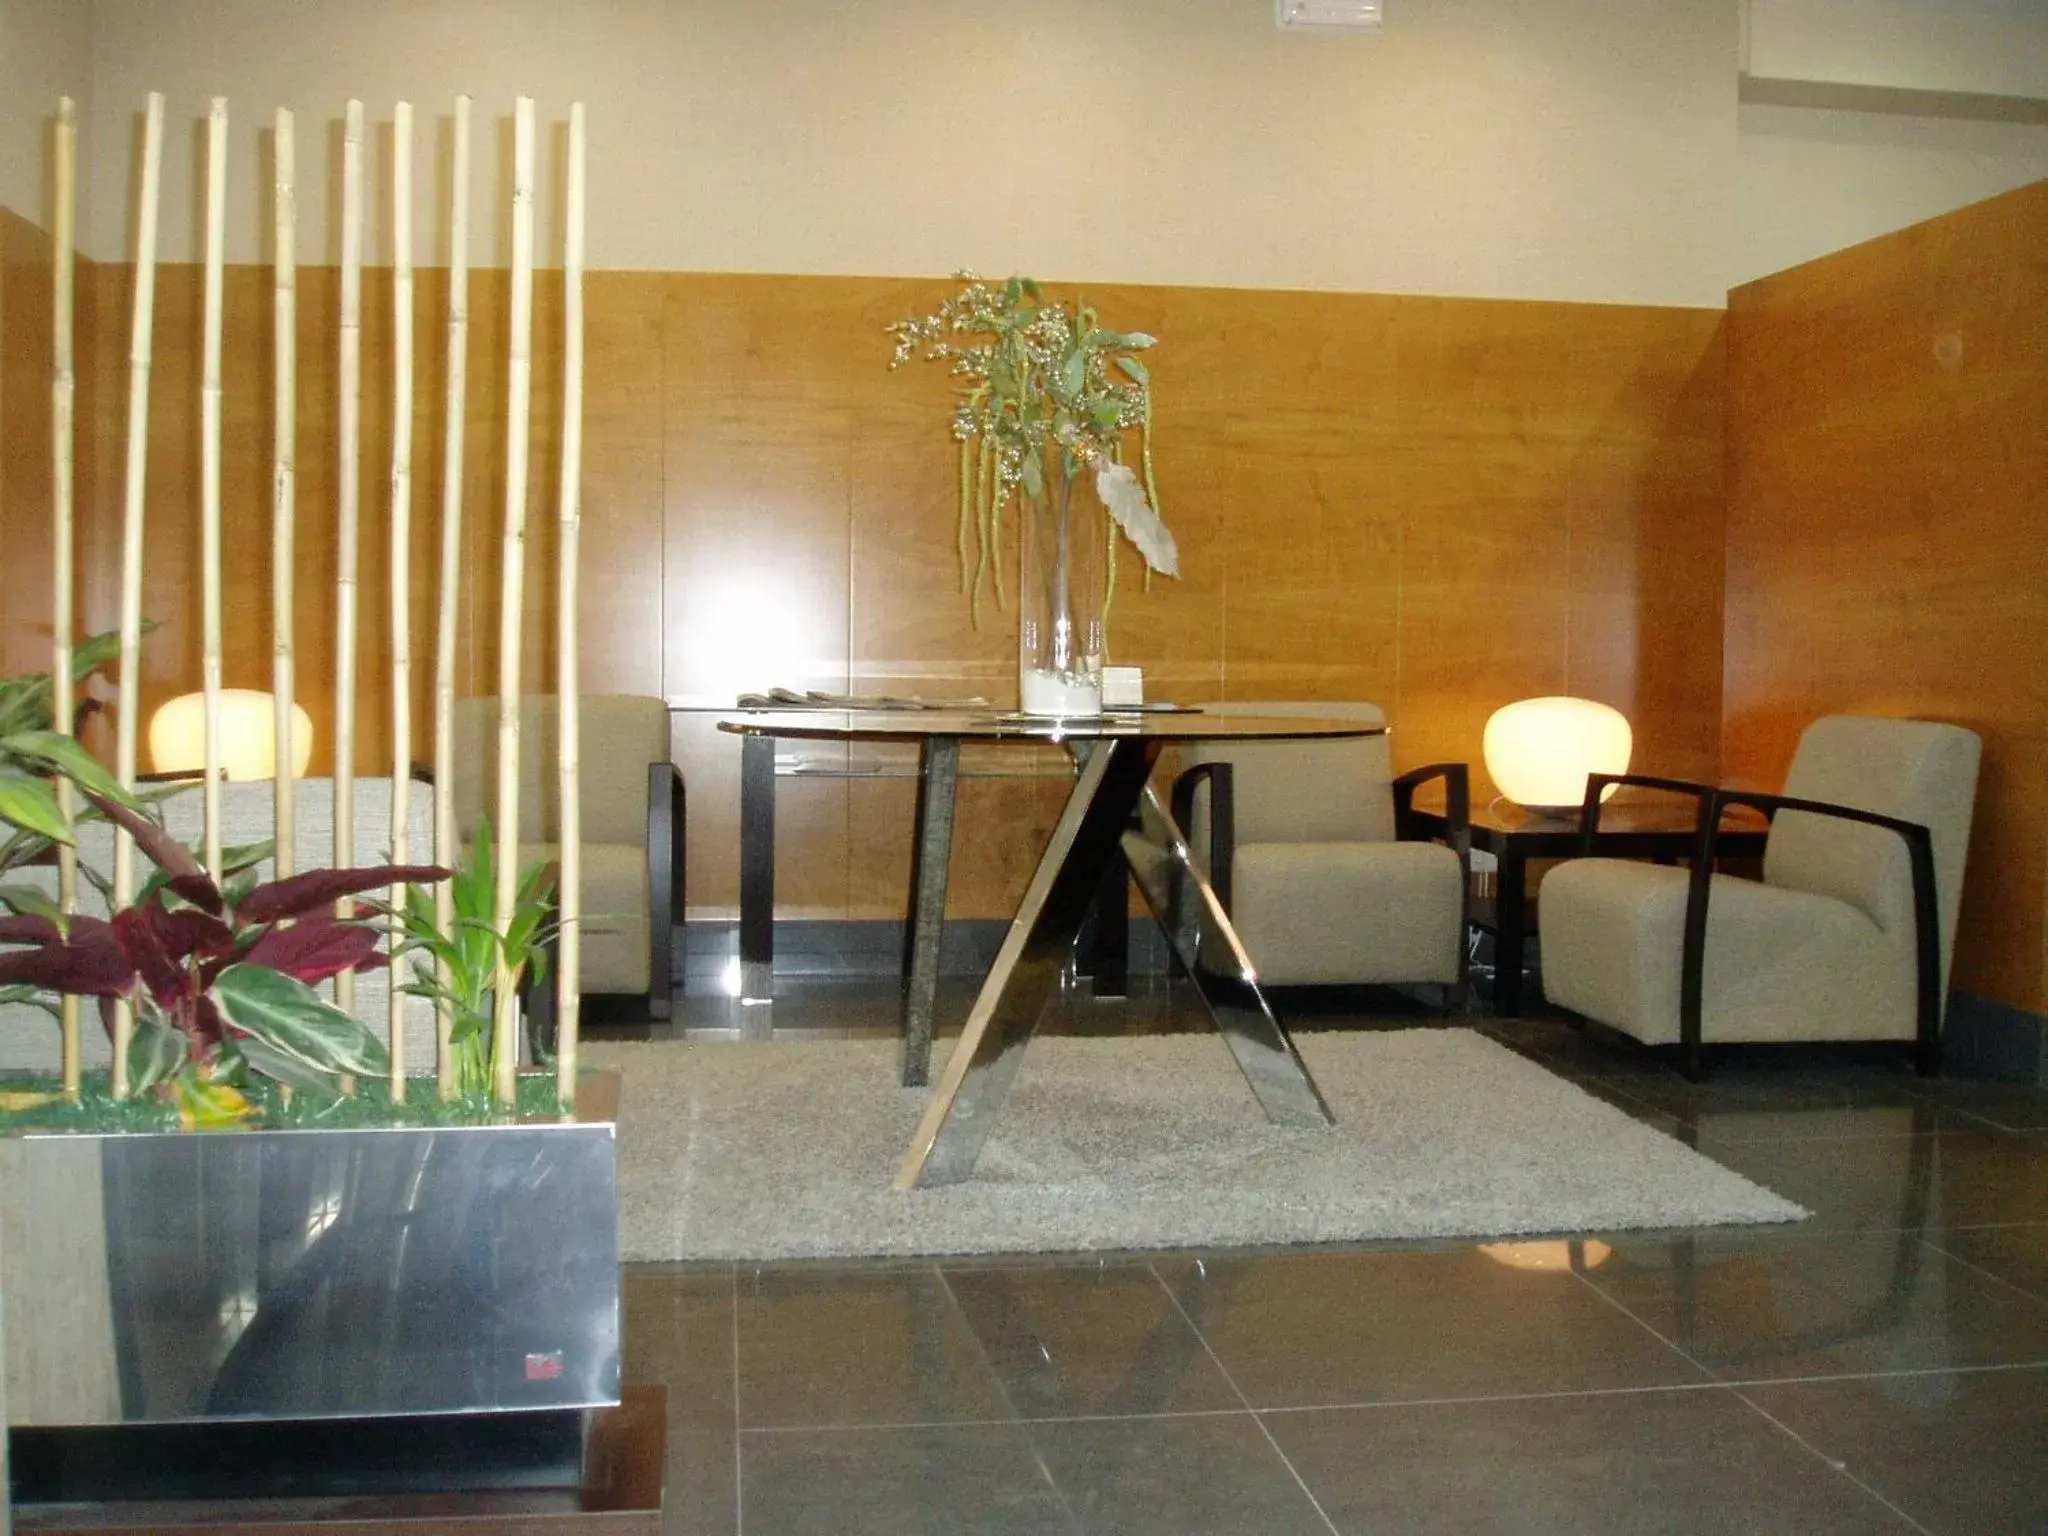 Lobby or reception in Hotel Condes de Haro